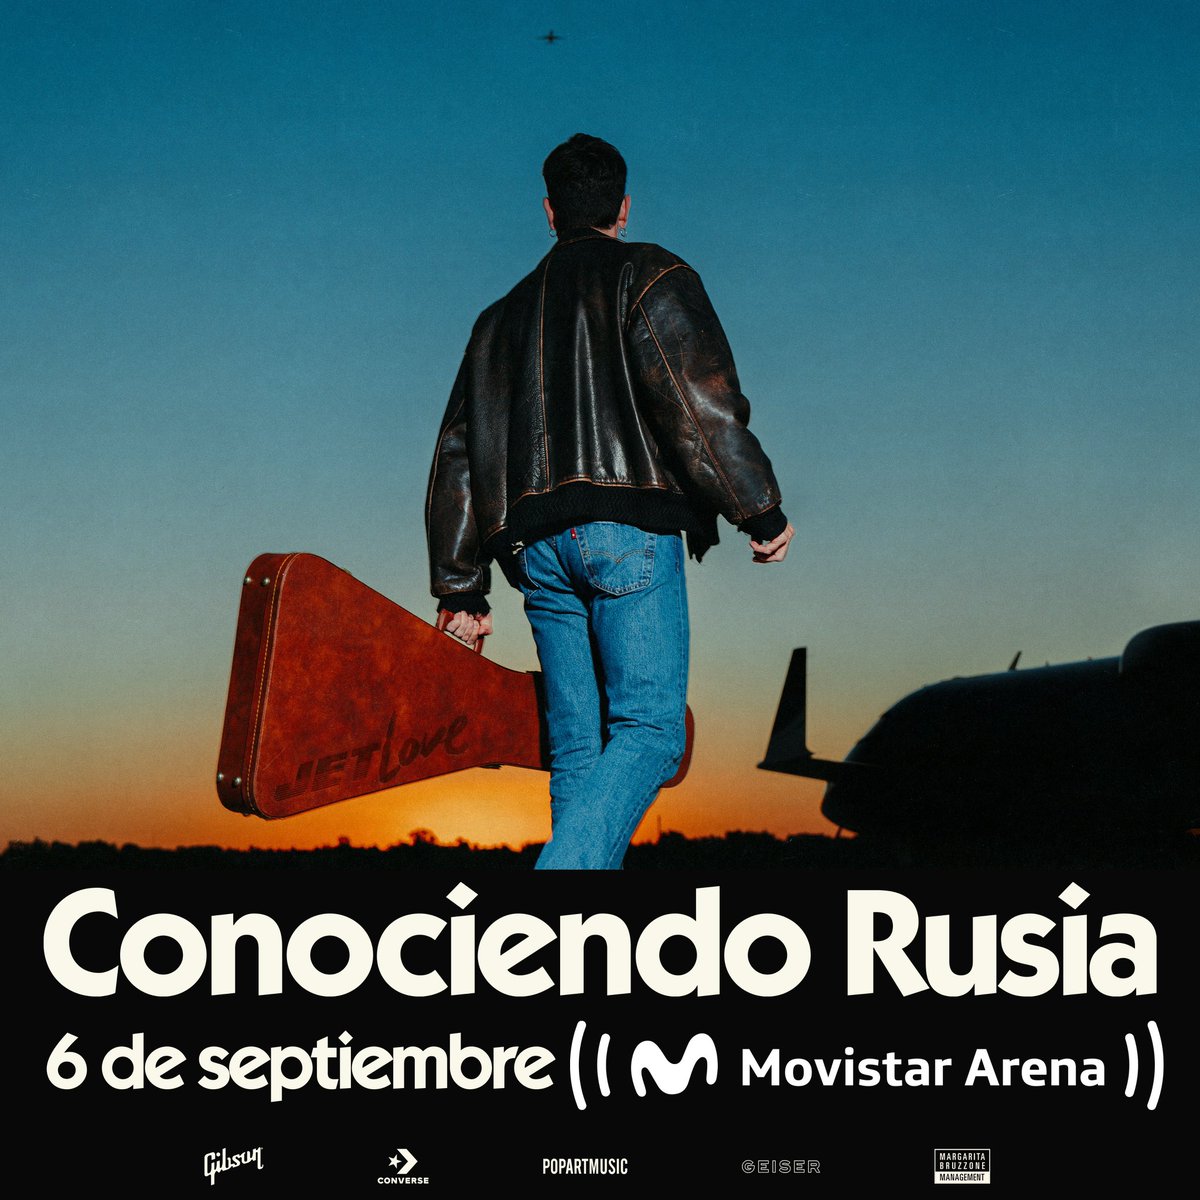 BUENOS AIRES!!! TENEMOS FECHA!!! Nos vemos el 6 de septiembre en el Movistar Arena presentando Jet Love ✈️💗 🎫 Viernes 26/04 preventa Movistar 🎫 Lunes 29/04 entradas a la venta